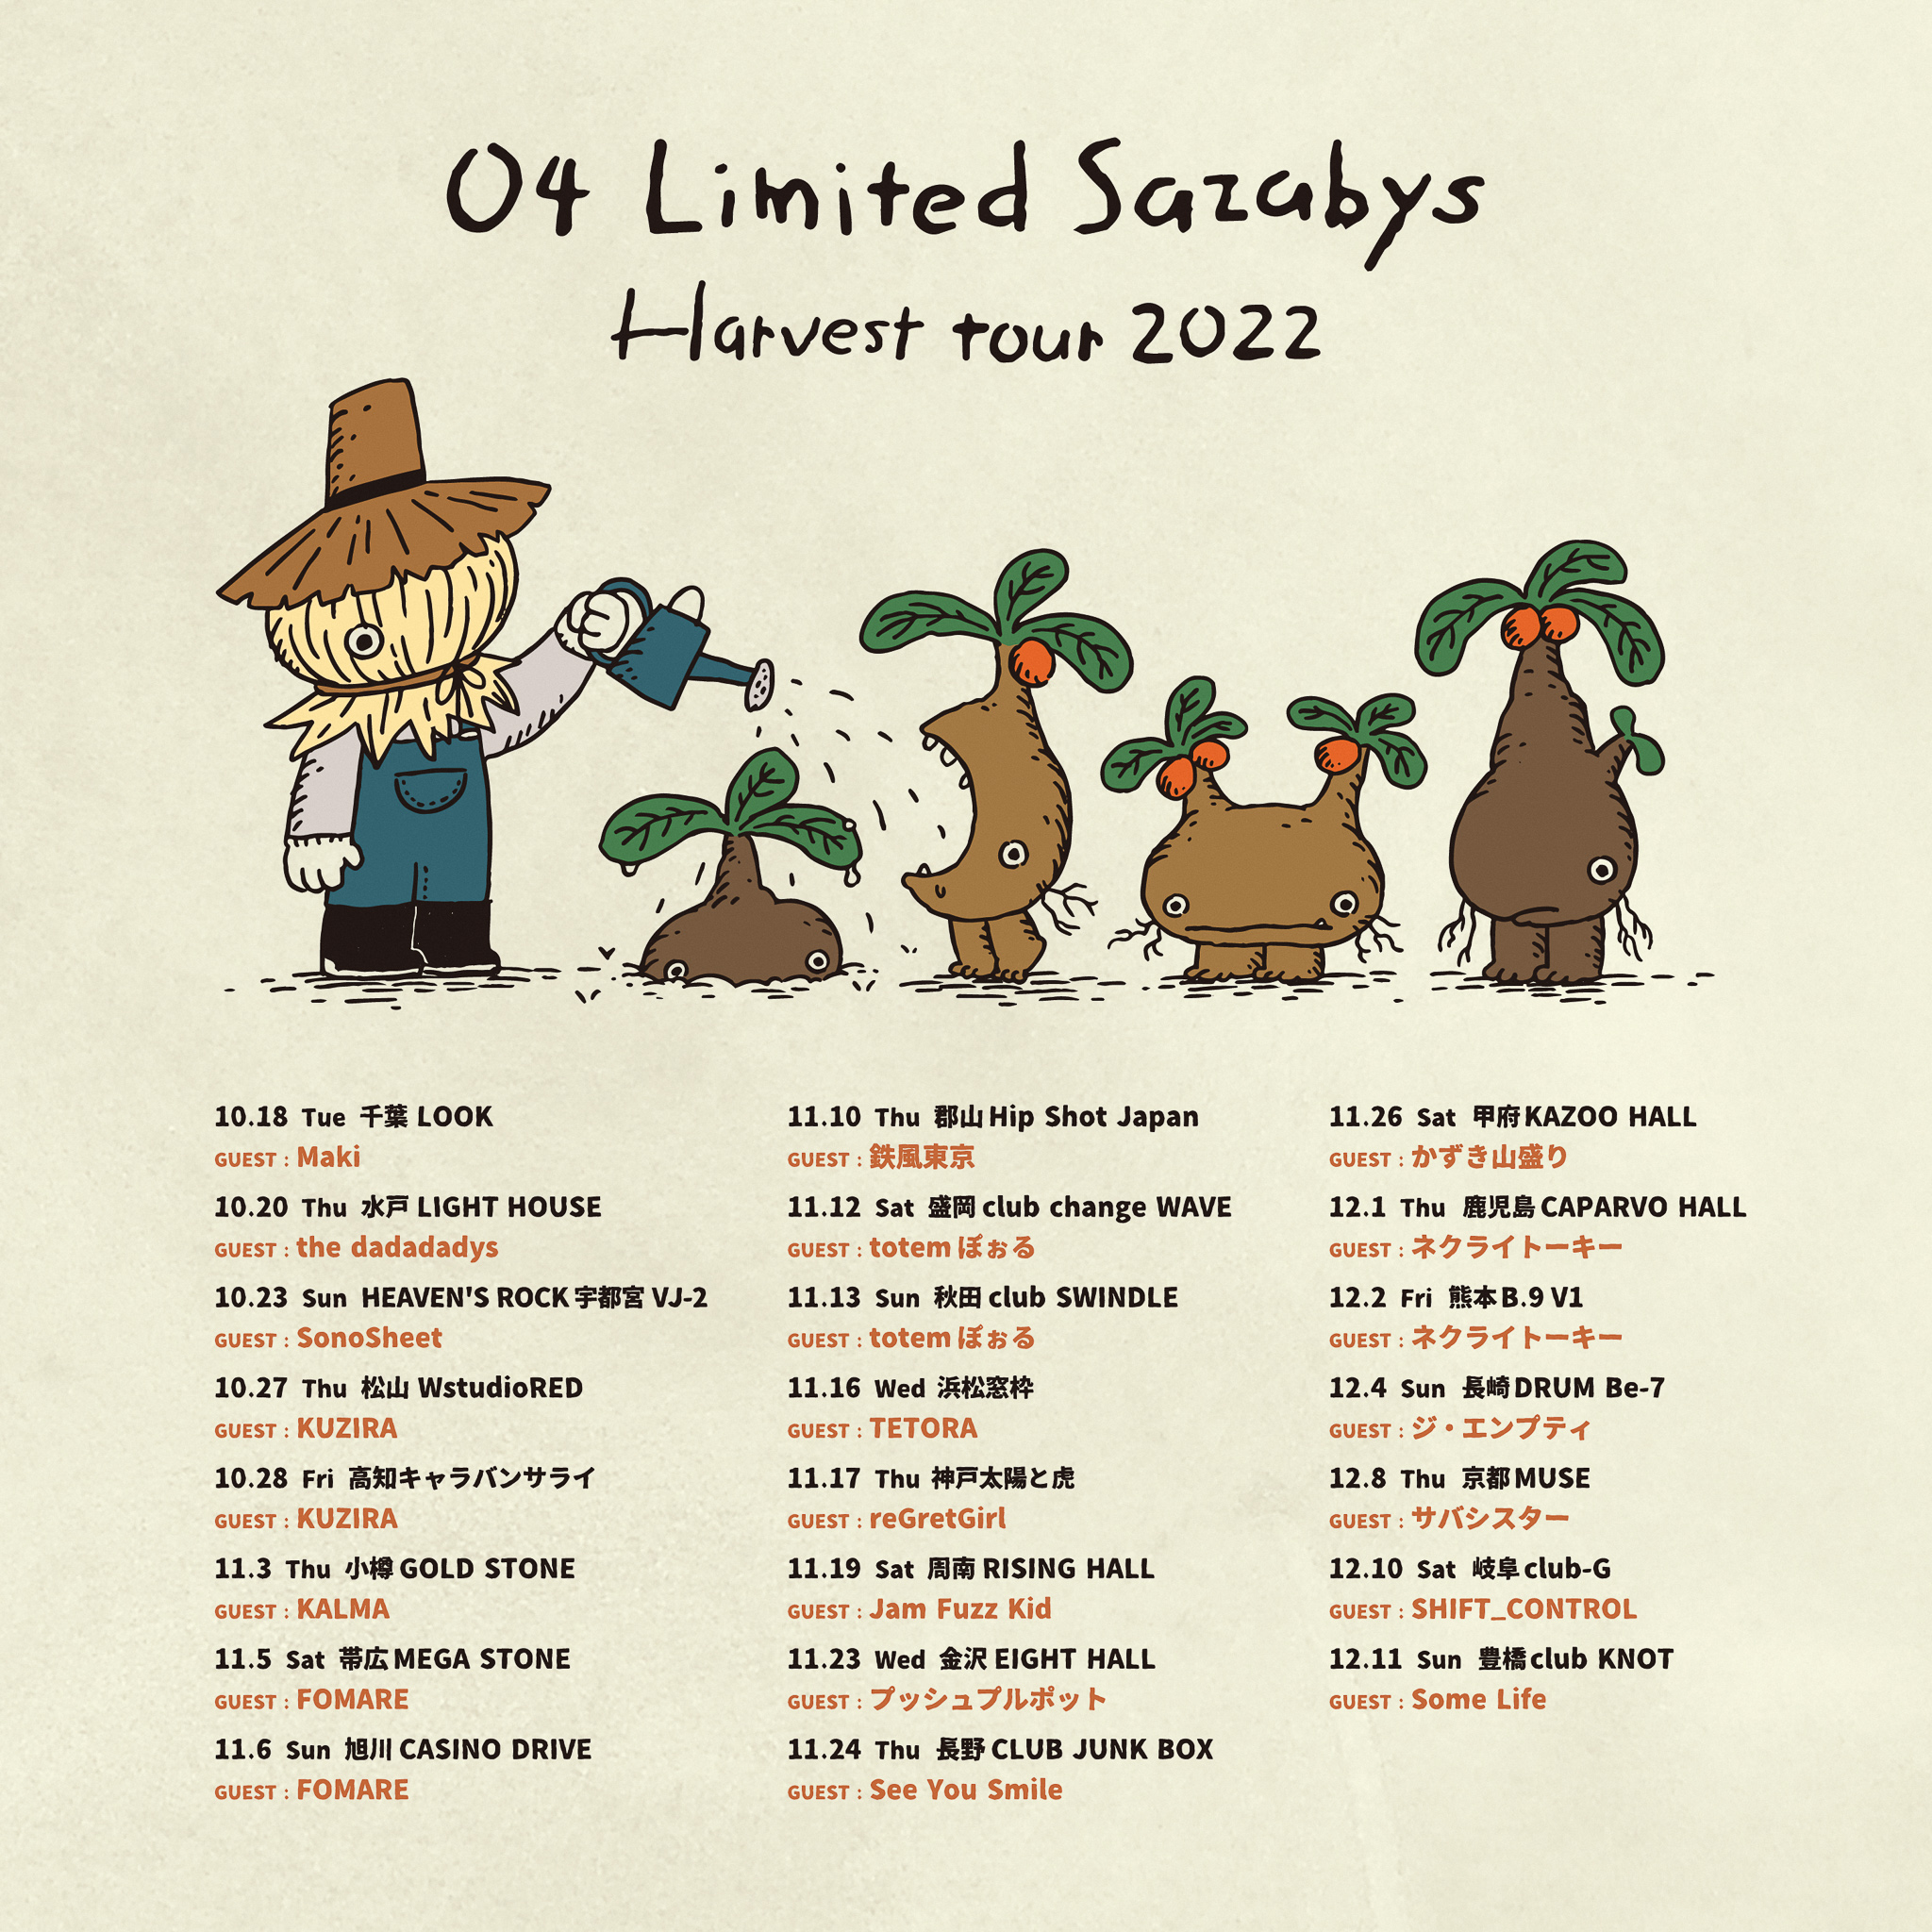 【石川】04 Limited Sazabys "Harvest tour 2022" (金沢EIGHT HALL)